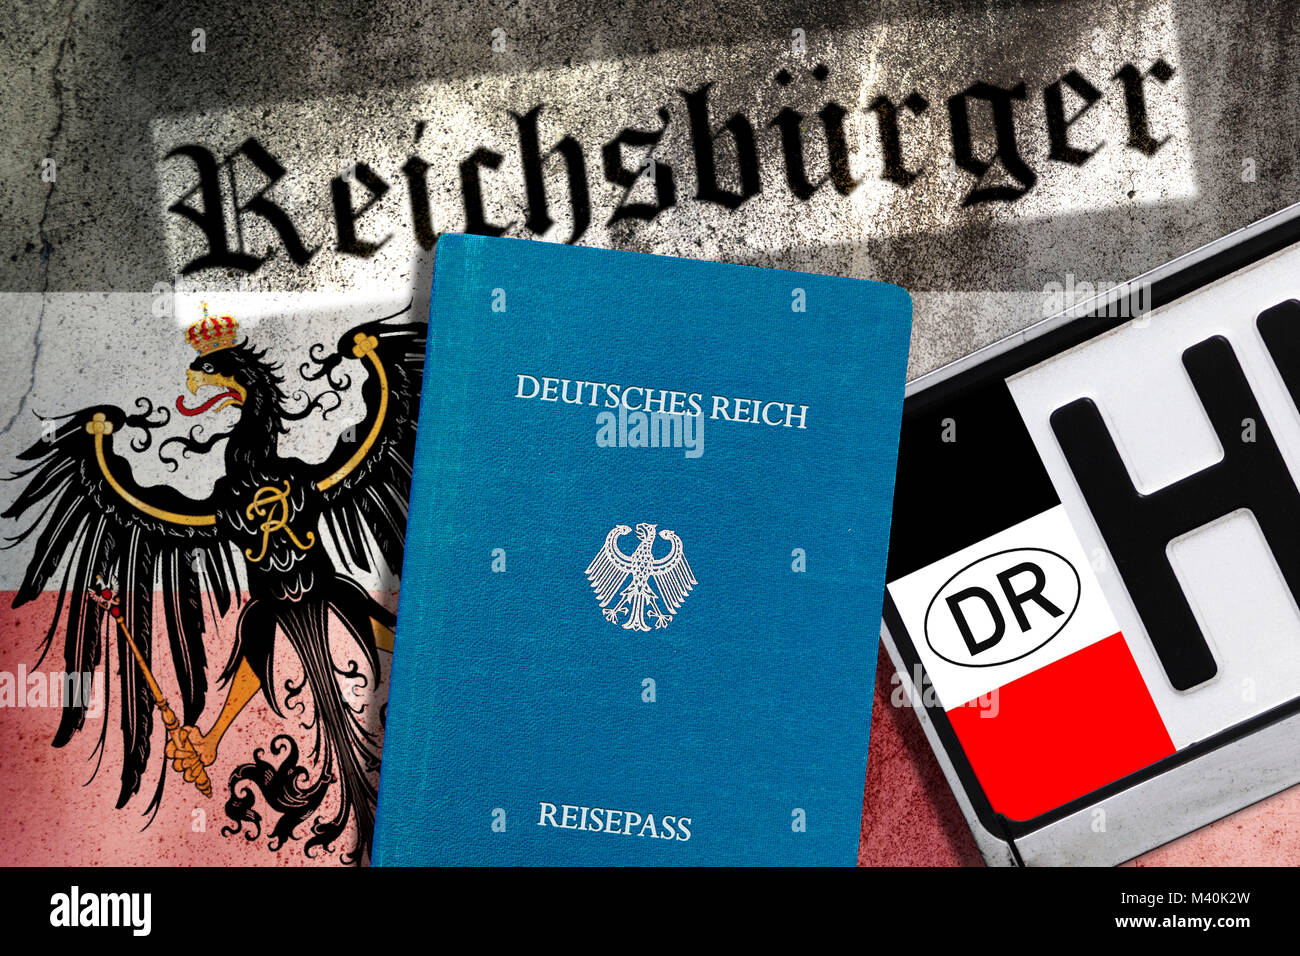 Reich cittadinanza passaporti, Imperial Eagle e Reich cittadinanza numero di targa, un'icona Foto, Reichsbürger-Pässe, Reichsadler und Reichsbürger-Nummern Foto Stock